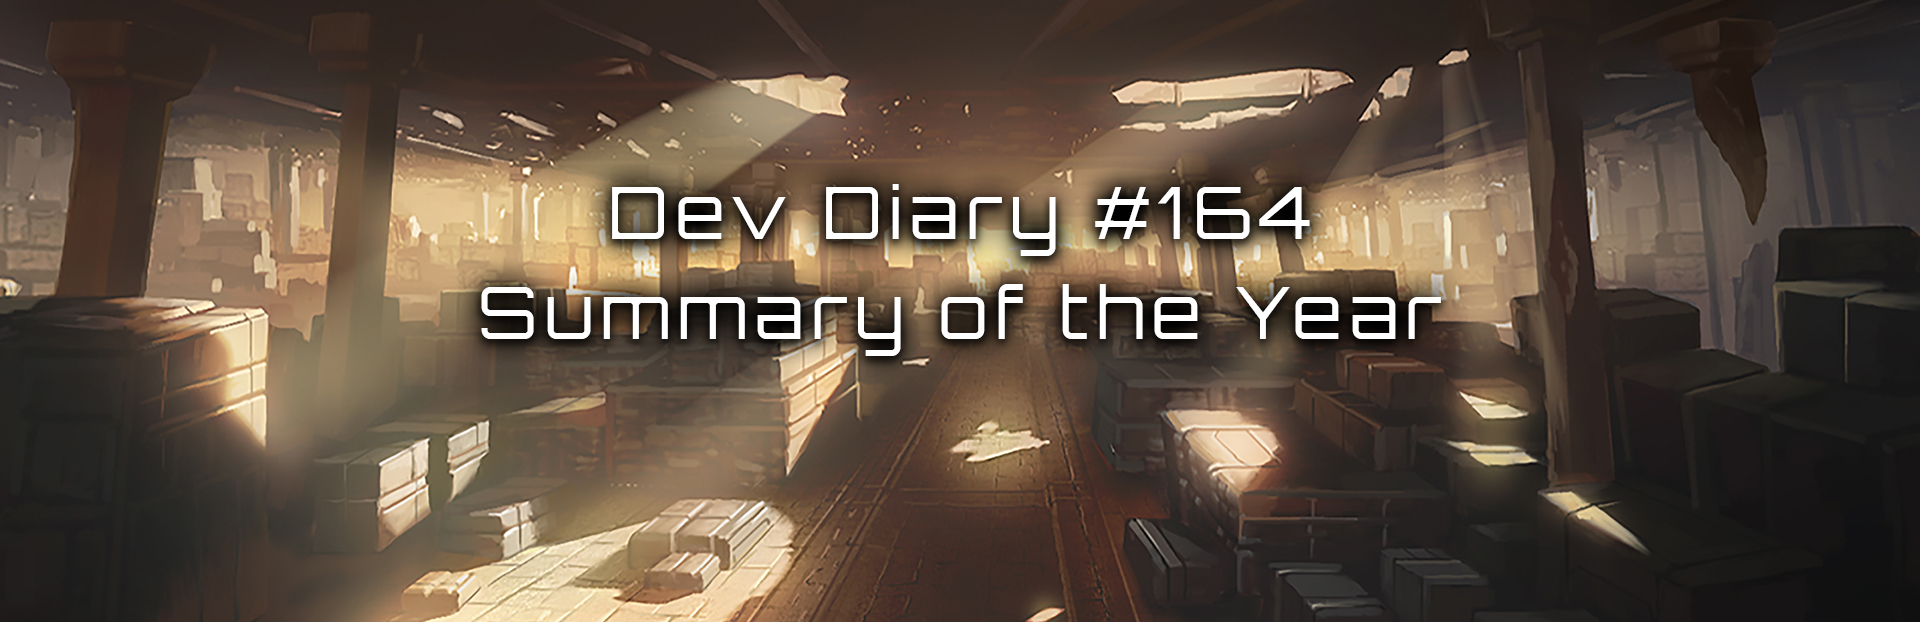 Stellaris - In Dev Diary #158